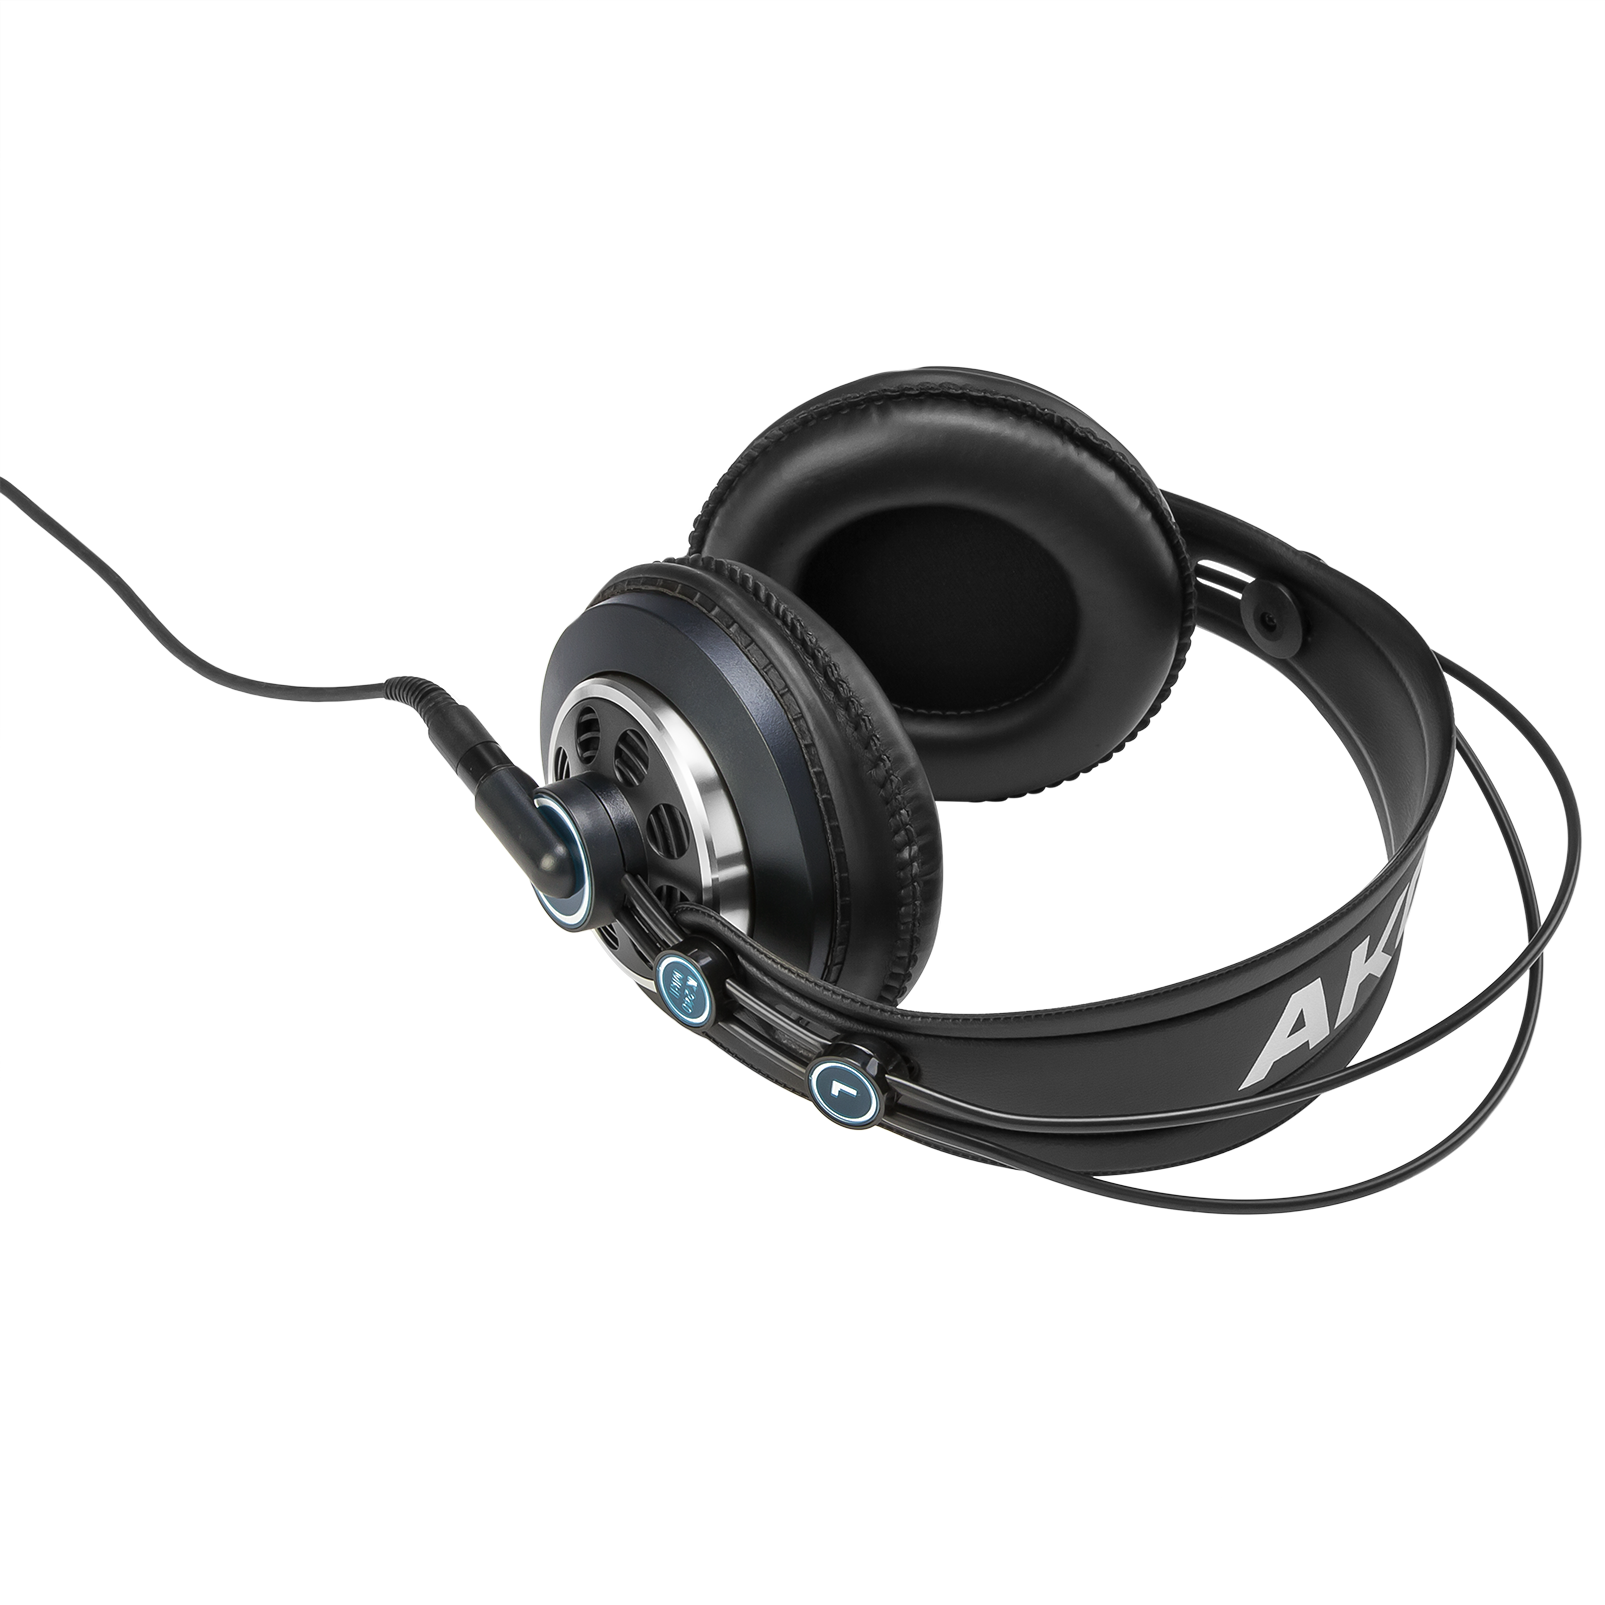 K240 MKII - Black - Professional studio headphones - Detailshot 2